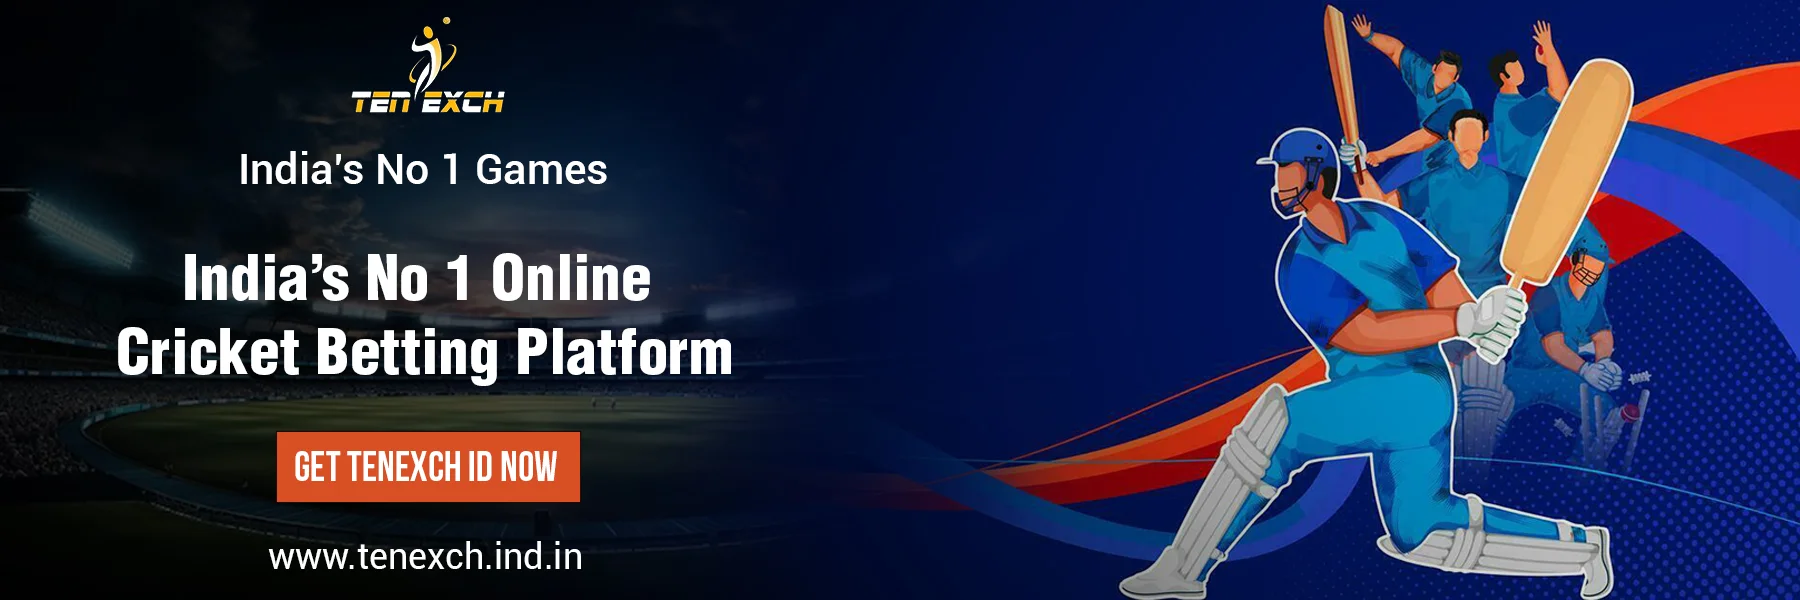 India’s No 1 Online Cricket Betting Platform banner | Tenexch